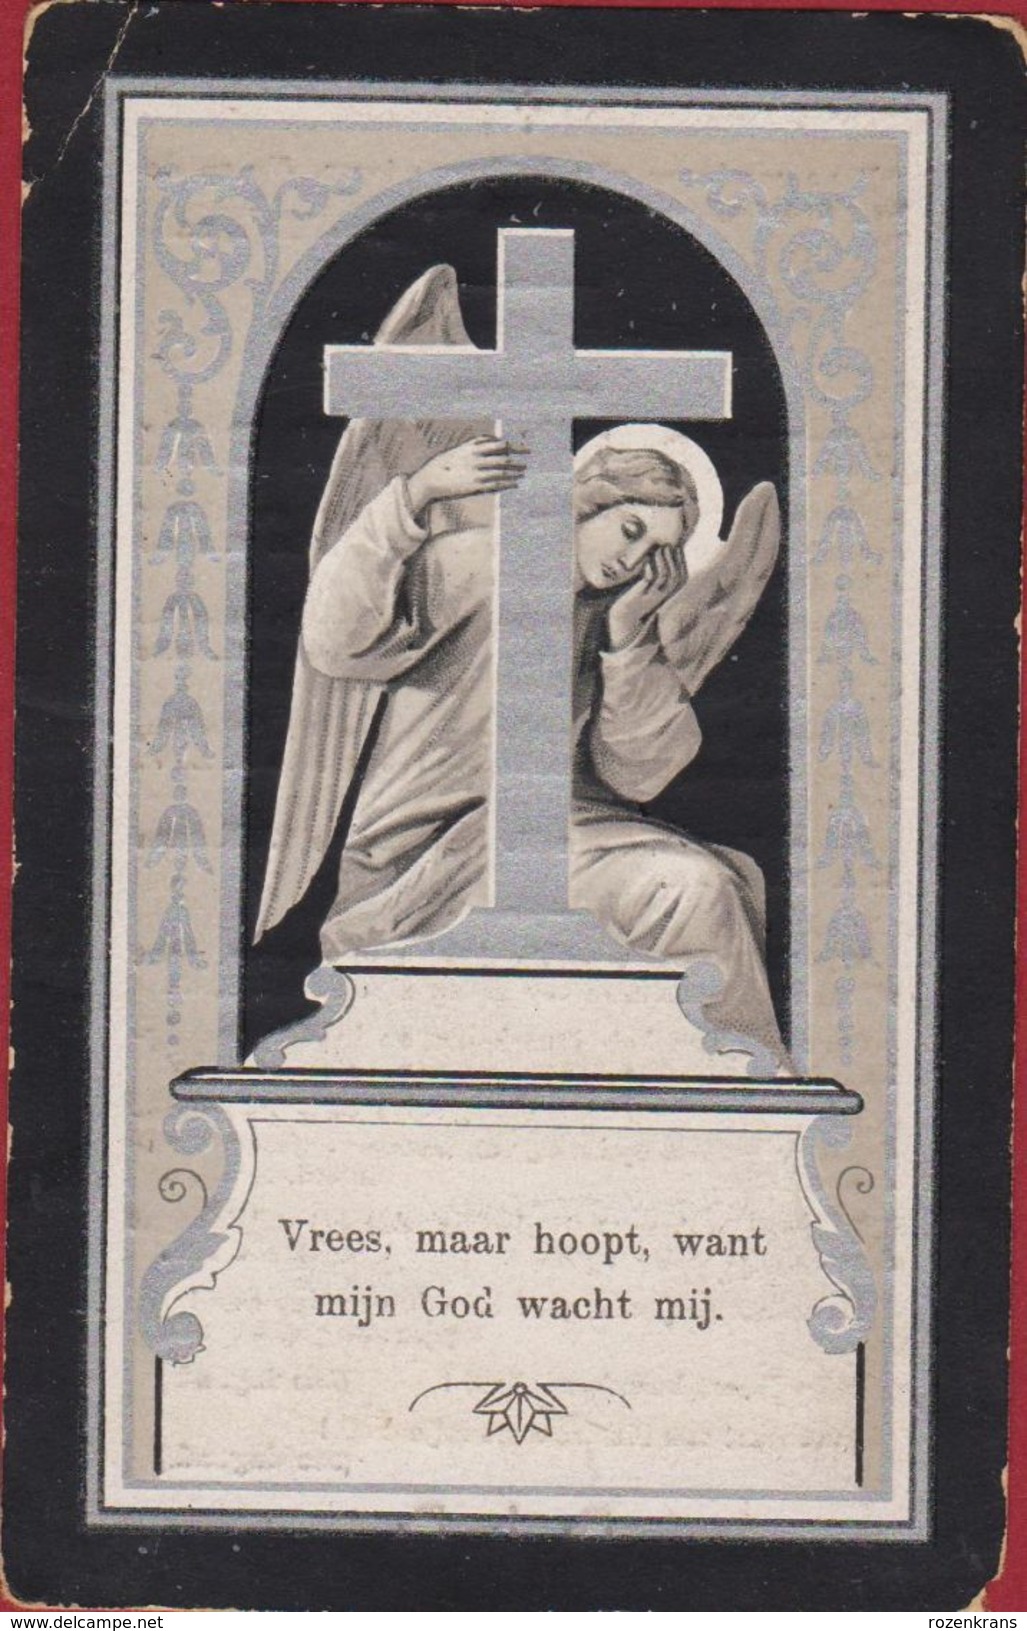 Petrus Van Eck Diest 1821 1906 Webbecom Ange Angel Litho Doodsprentje Image Mortuaire - Devotieprenten